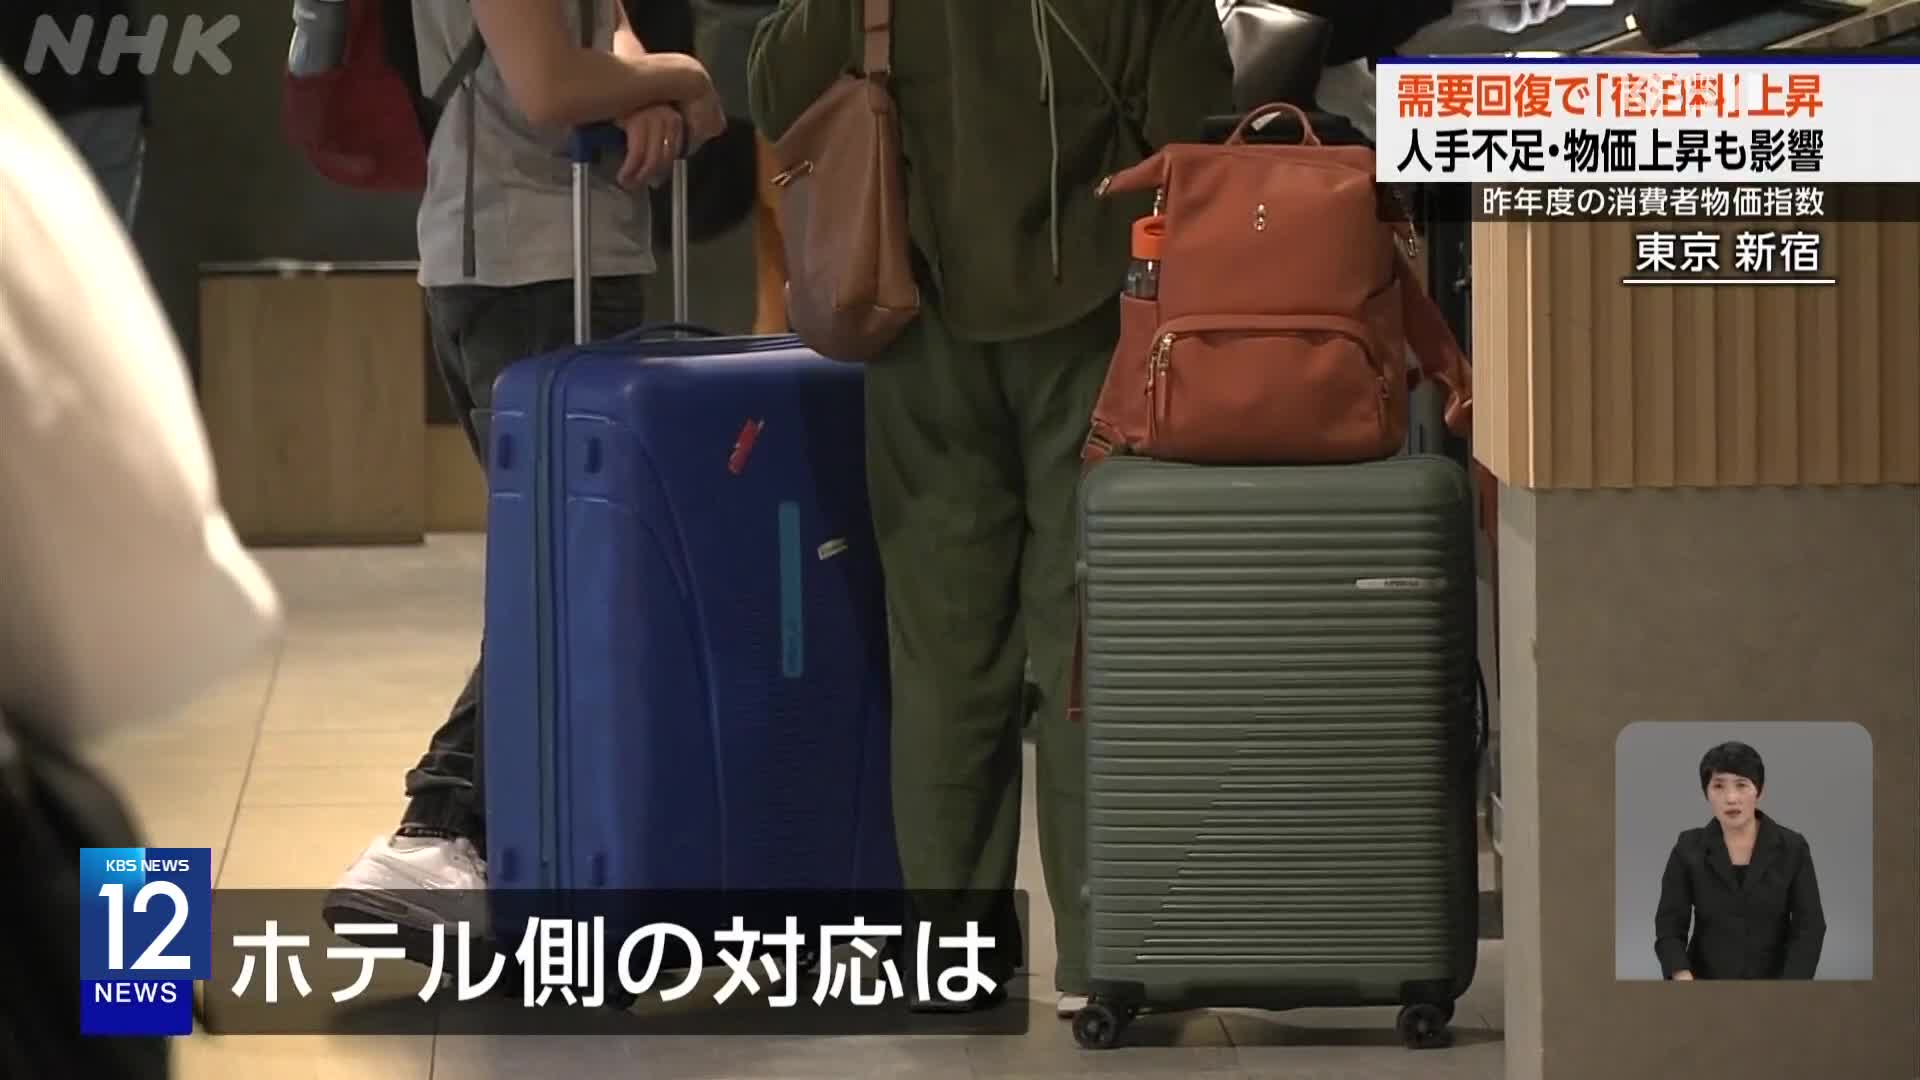 일본, 호텔 등 숙박료 급등으로 관광·출장 영향